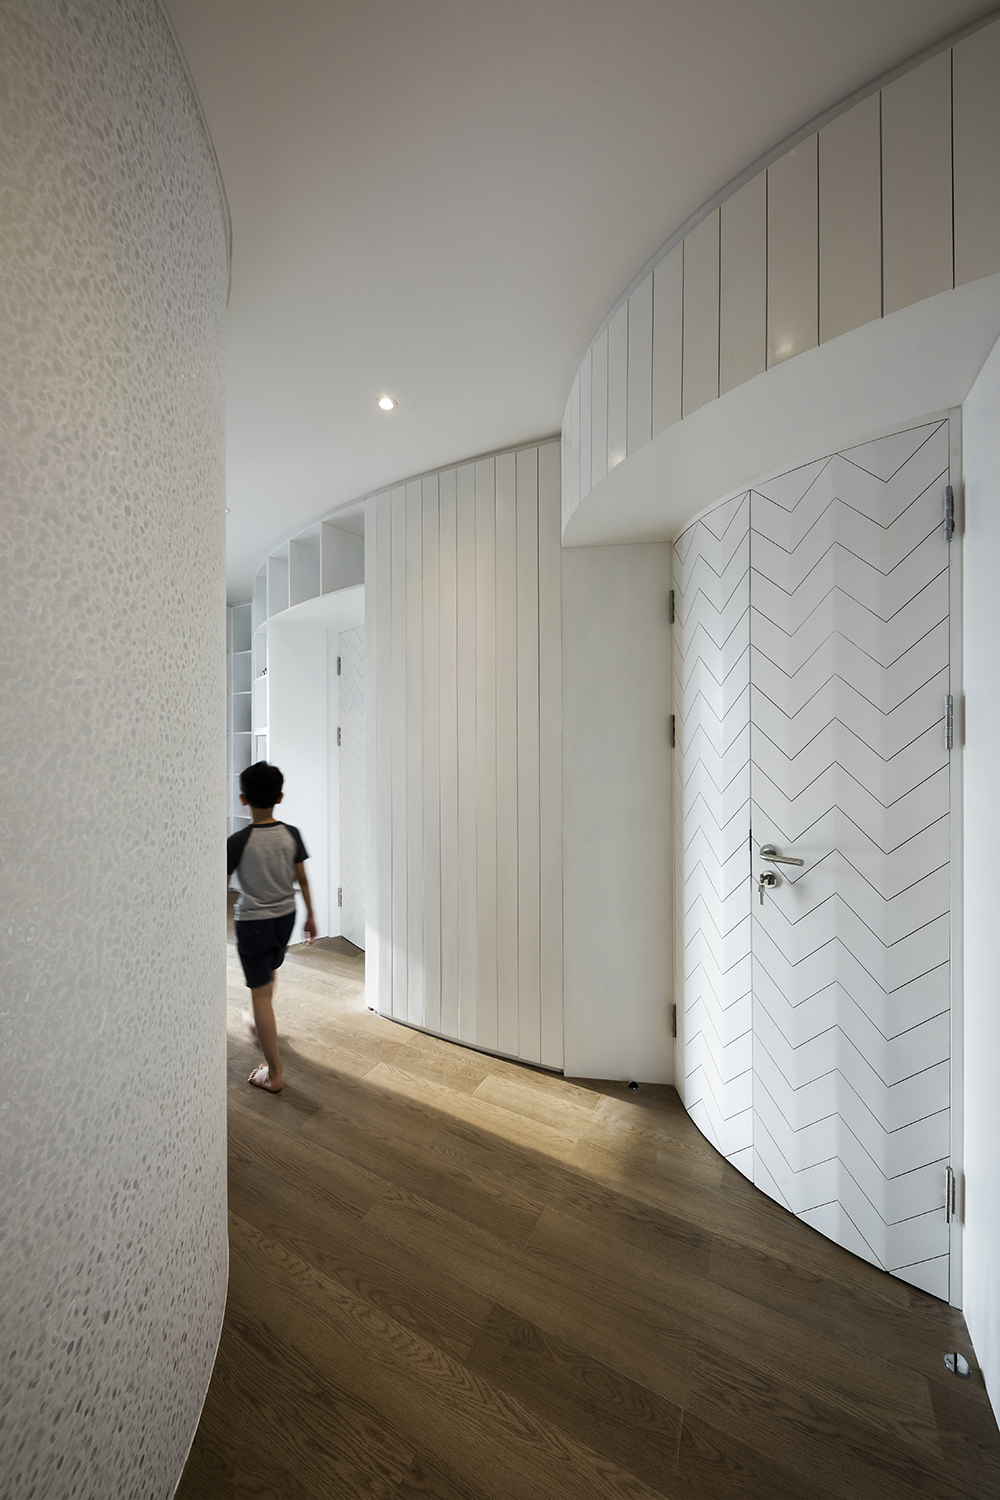 6- Corridor surouding bedroom